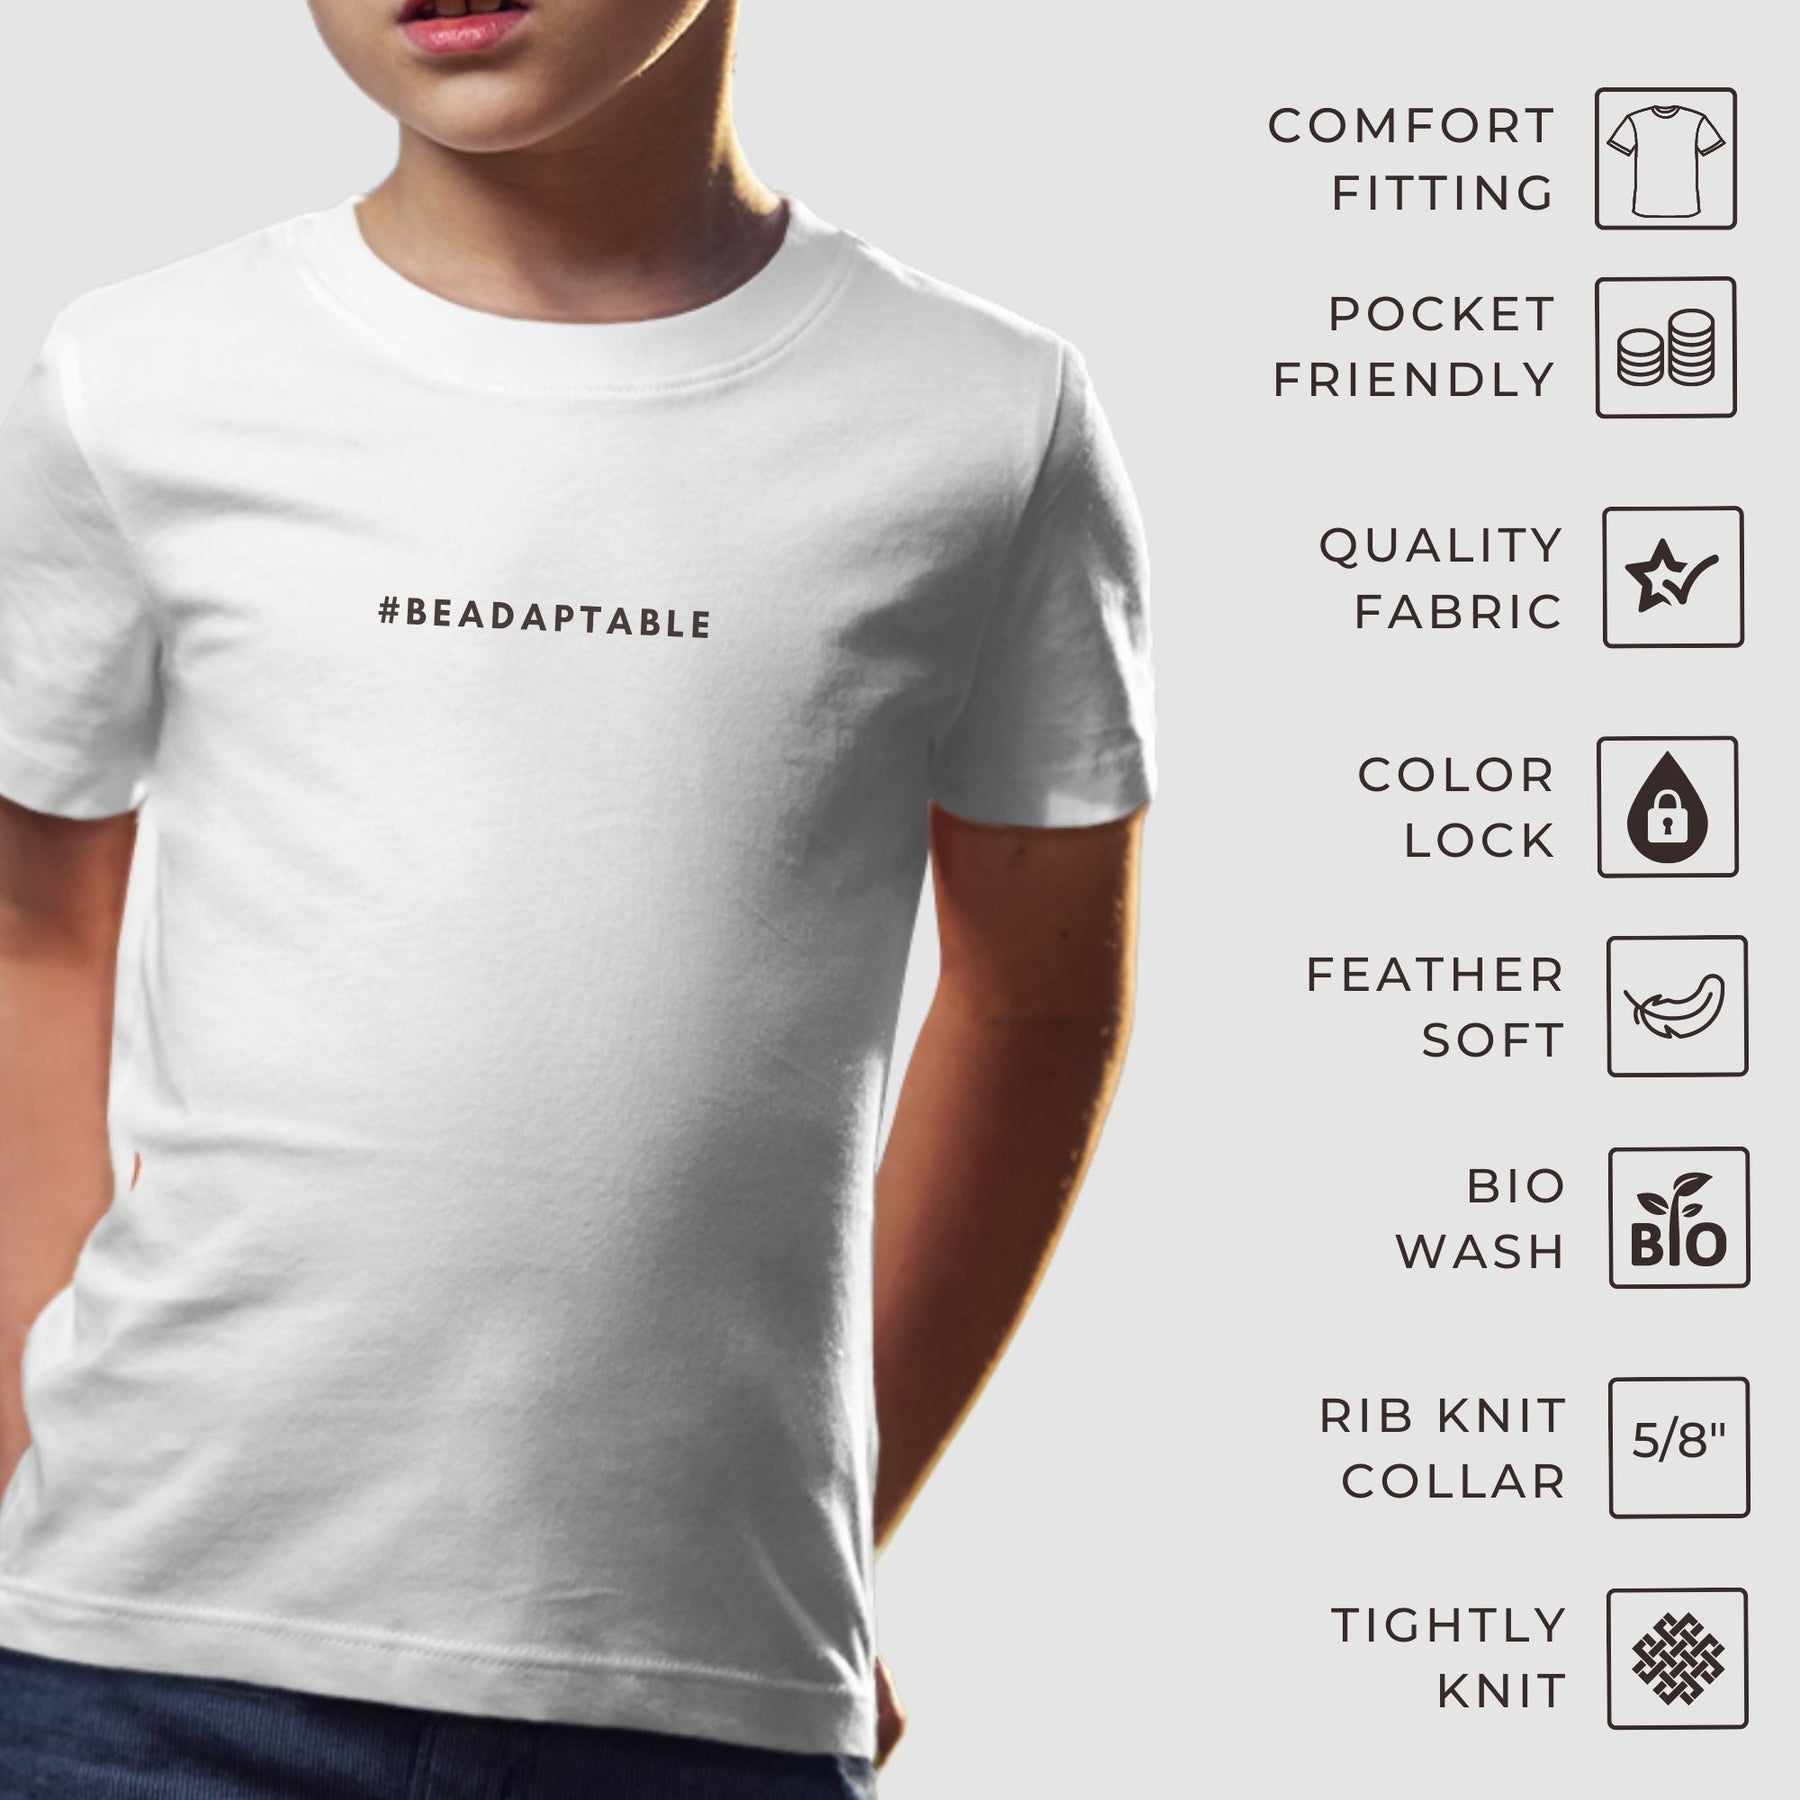 compact-cotton-kids-t-shirts-feature-page-gogirgit-com